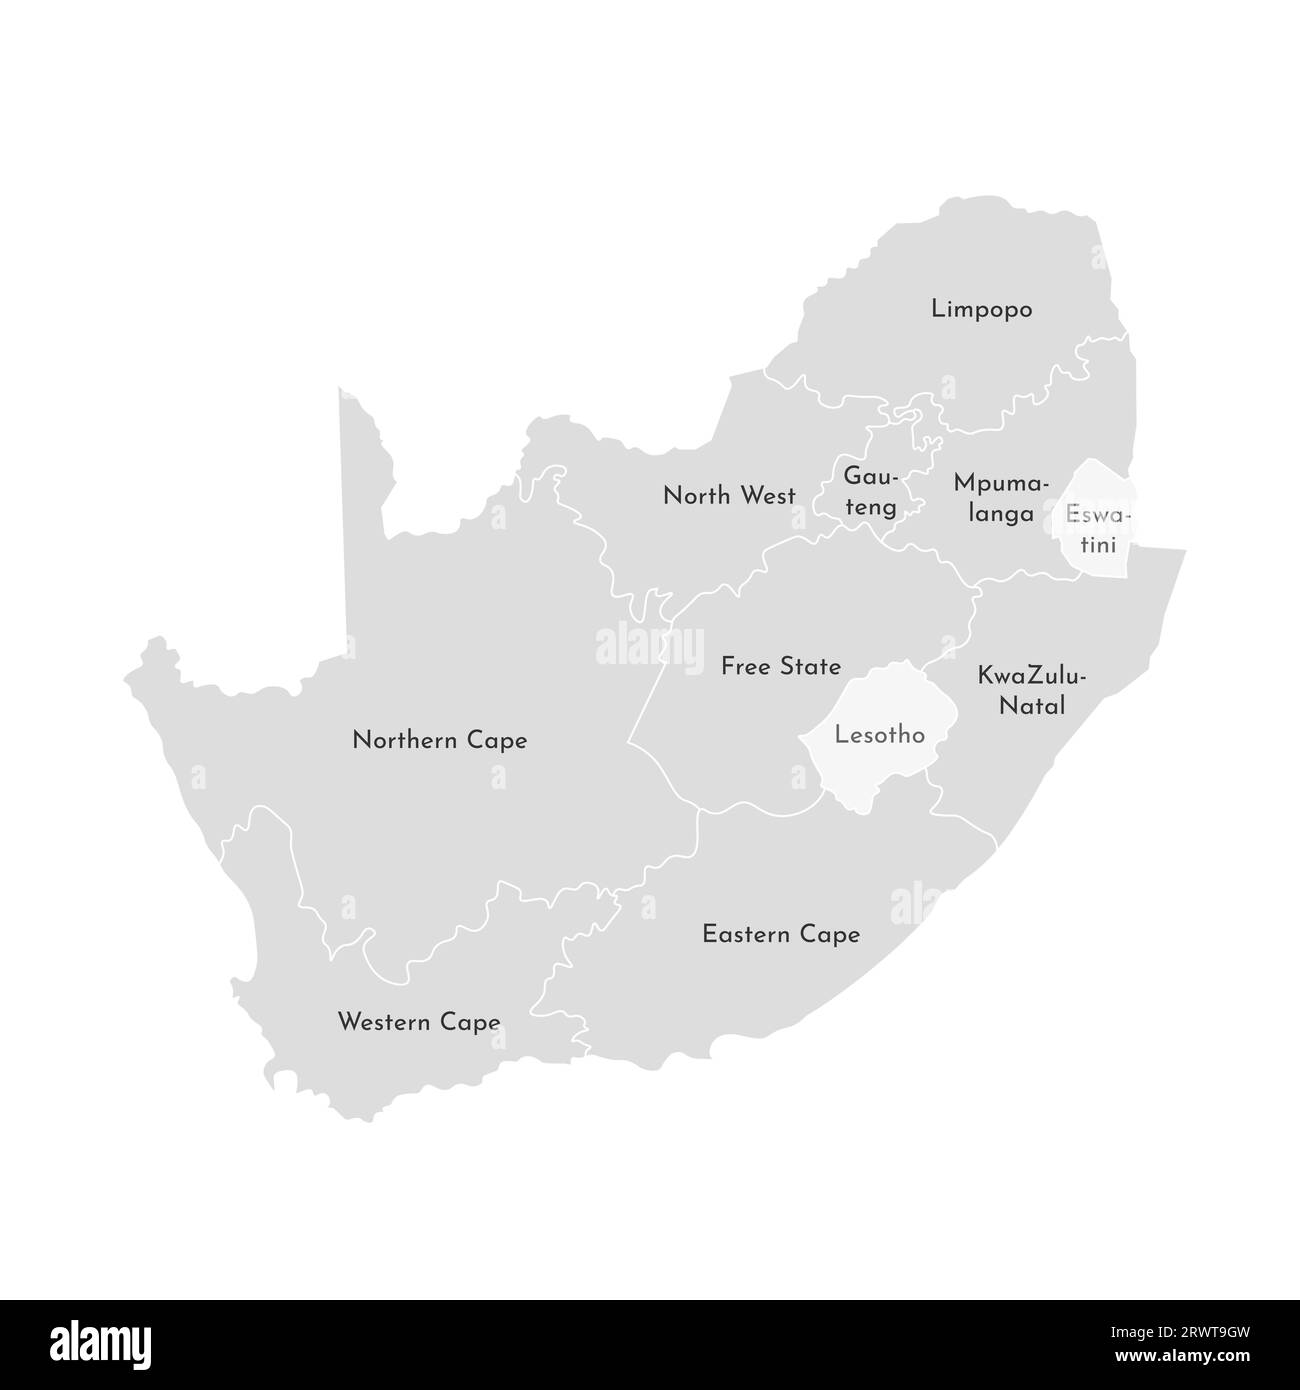 Vektorisolierte Darstellung einer vereinfachten Verwaltungskarte Südafrikas. Grenzen und Namen der Provinzen (Regionen). Graue Silhouetten. Weiß o Stock Vektor